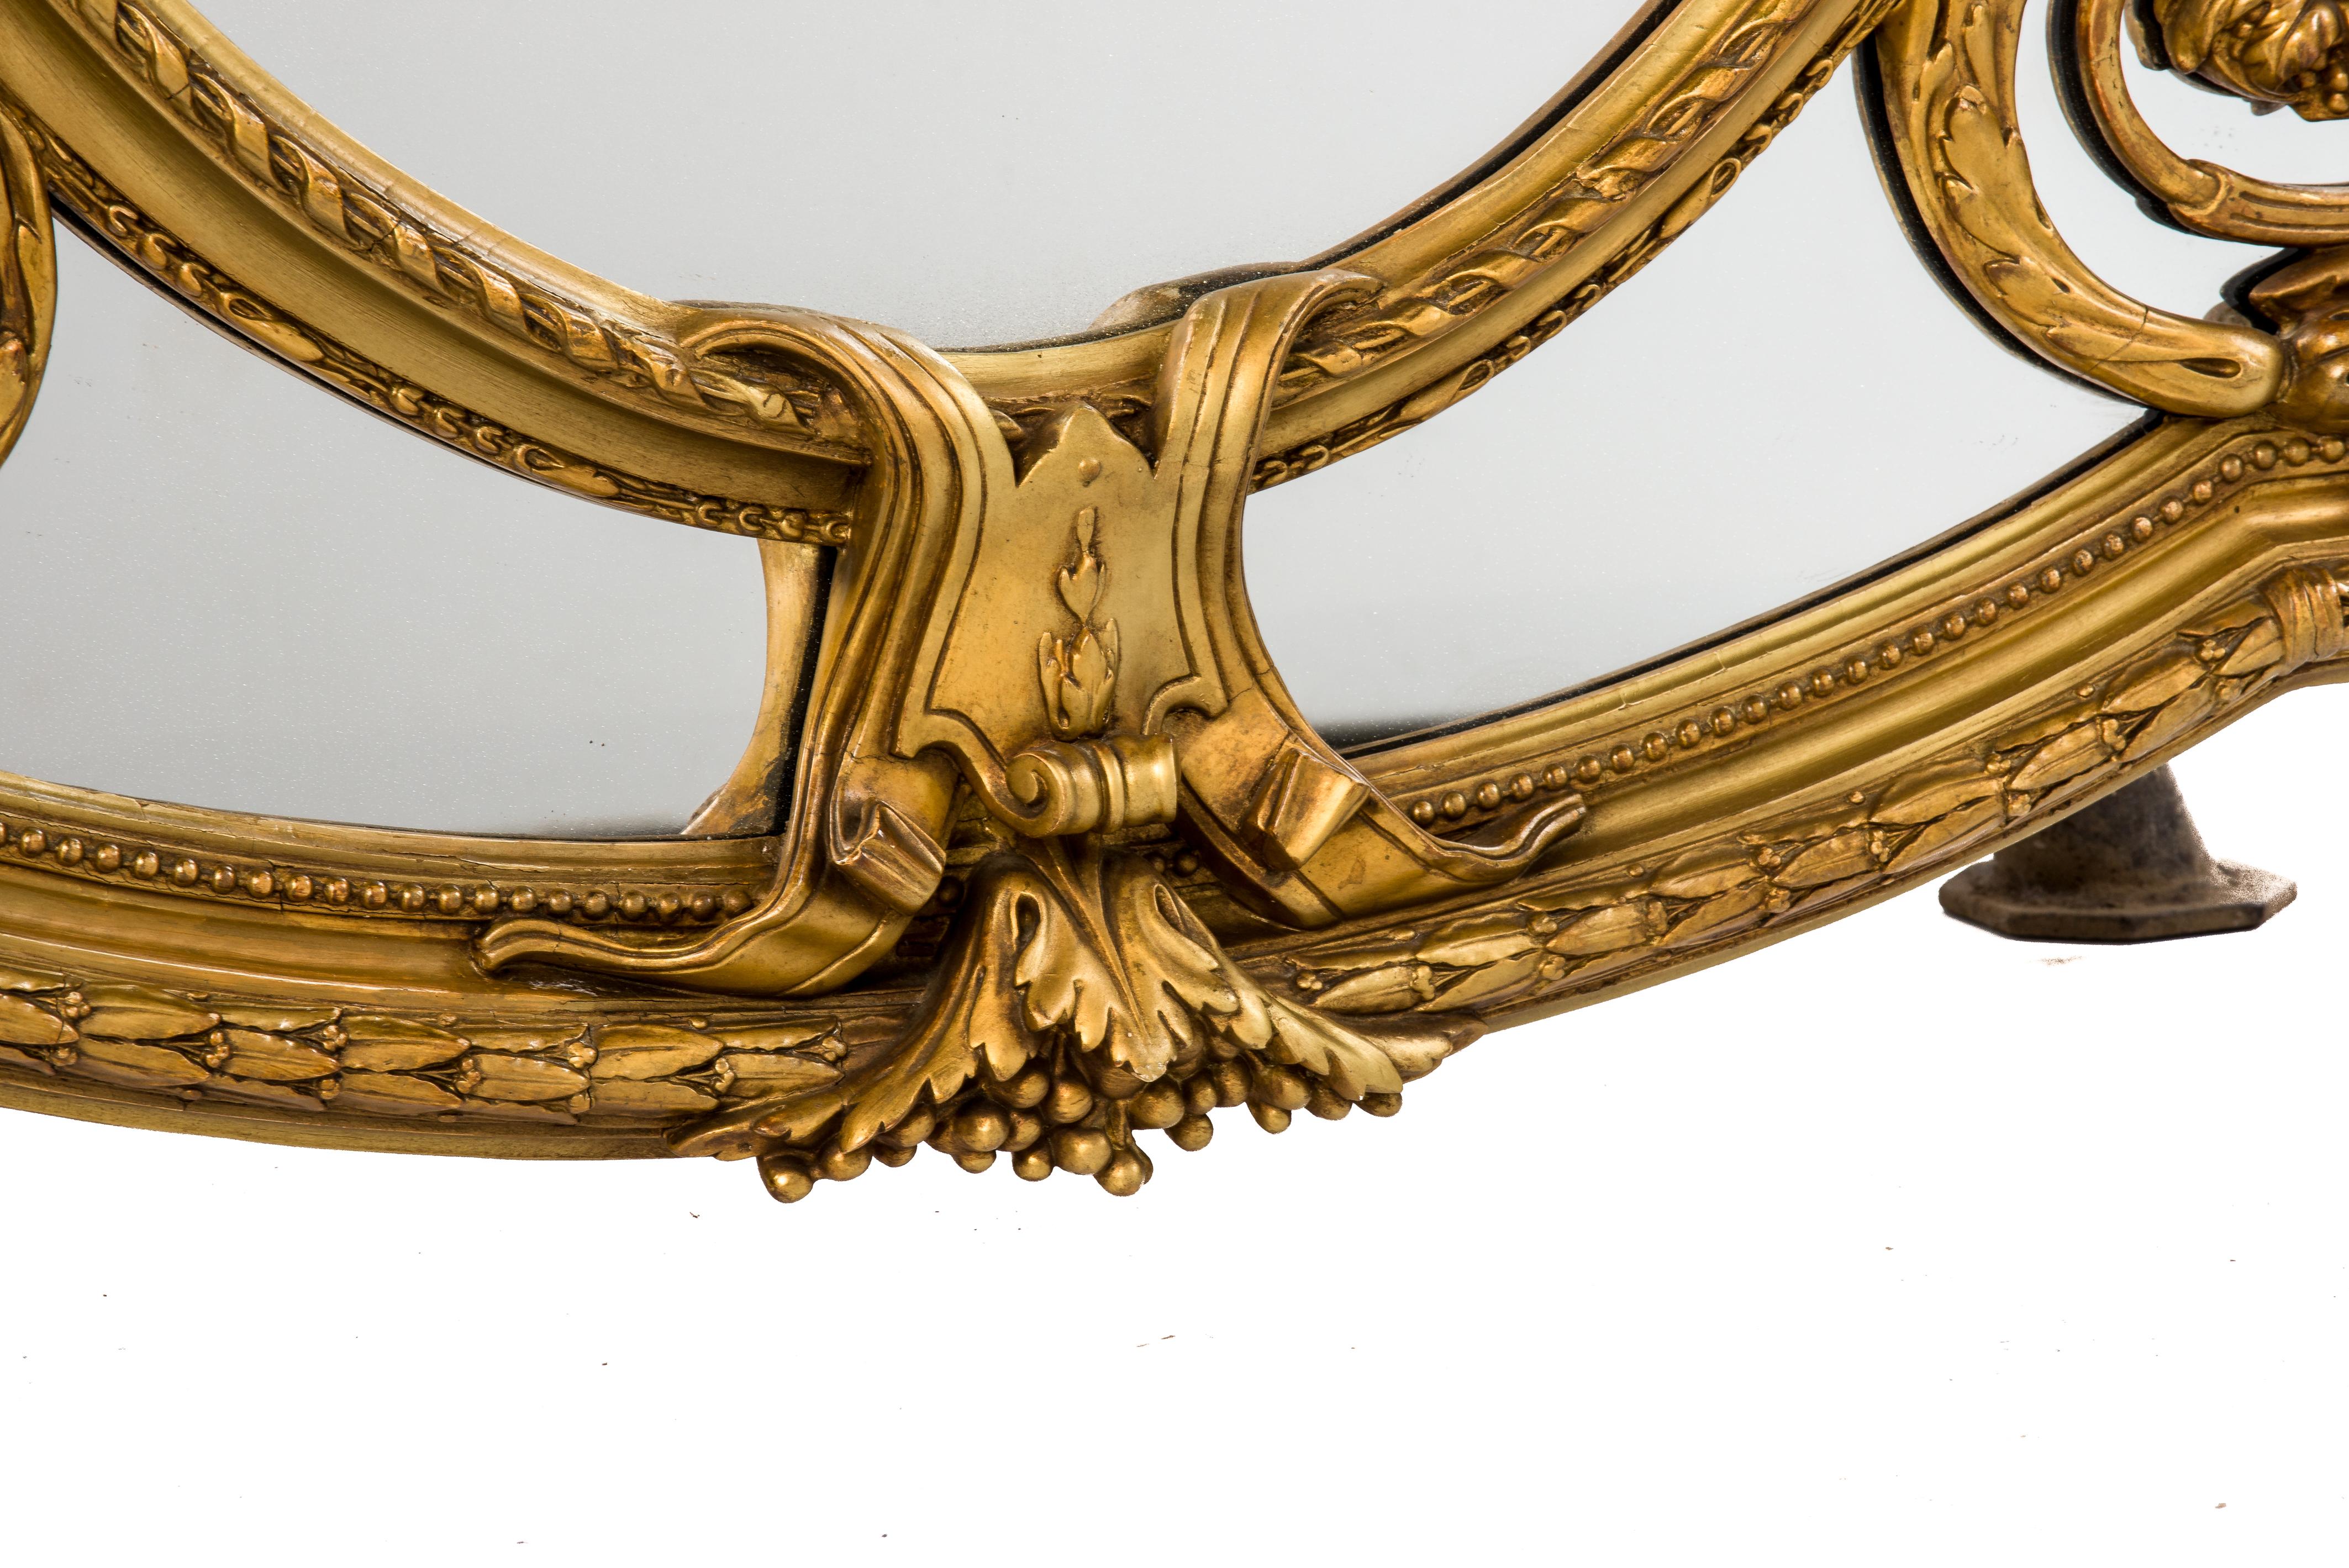 Gesso Grand miroir français ancien du 19ème siècle à parcloses Louis Seize doré à la feuille d'or